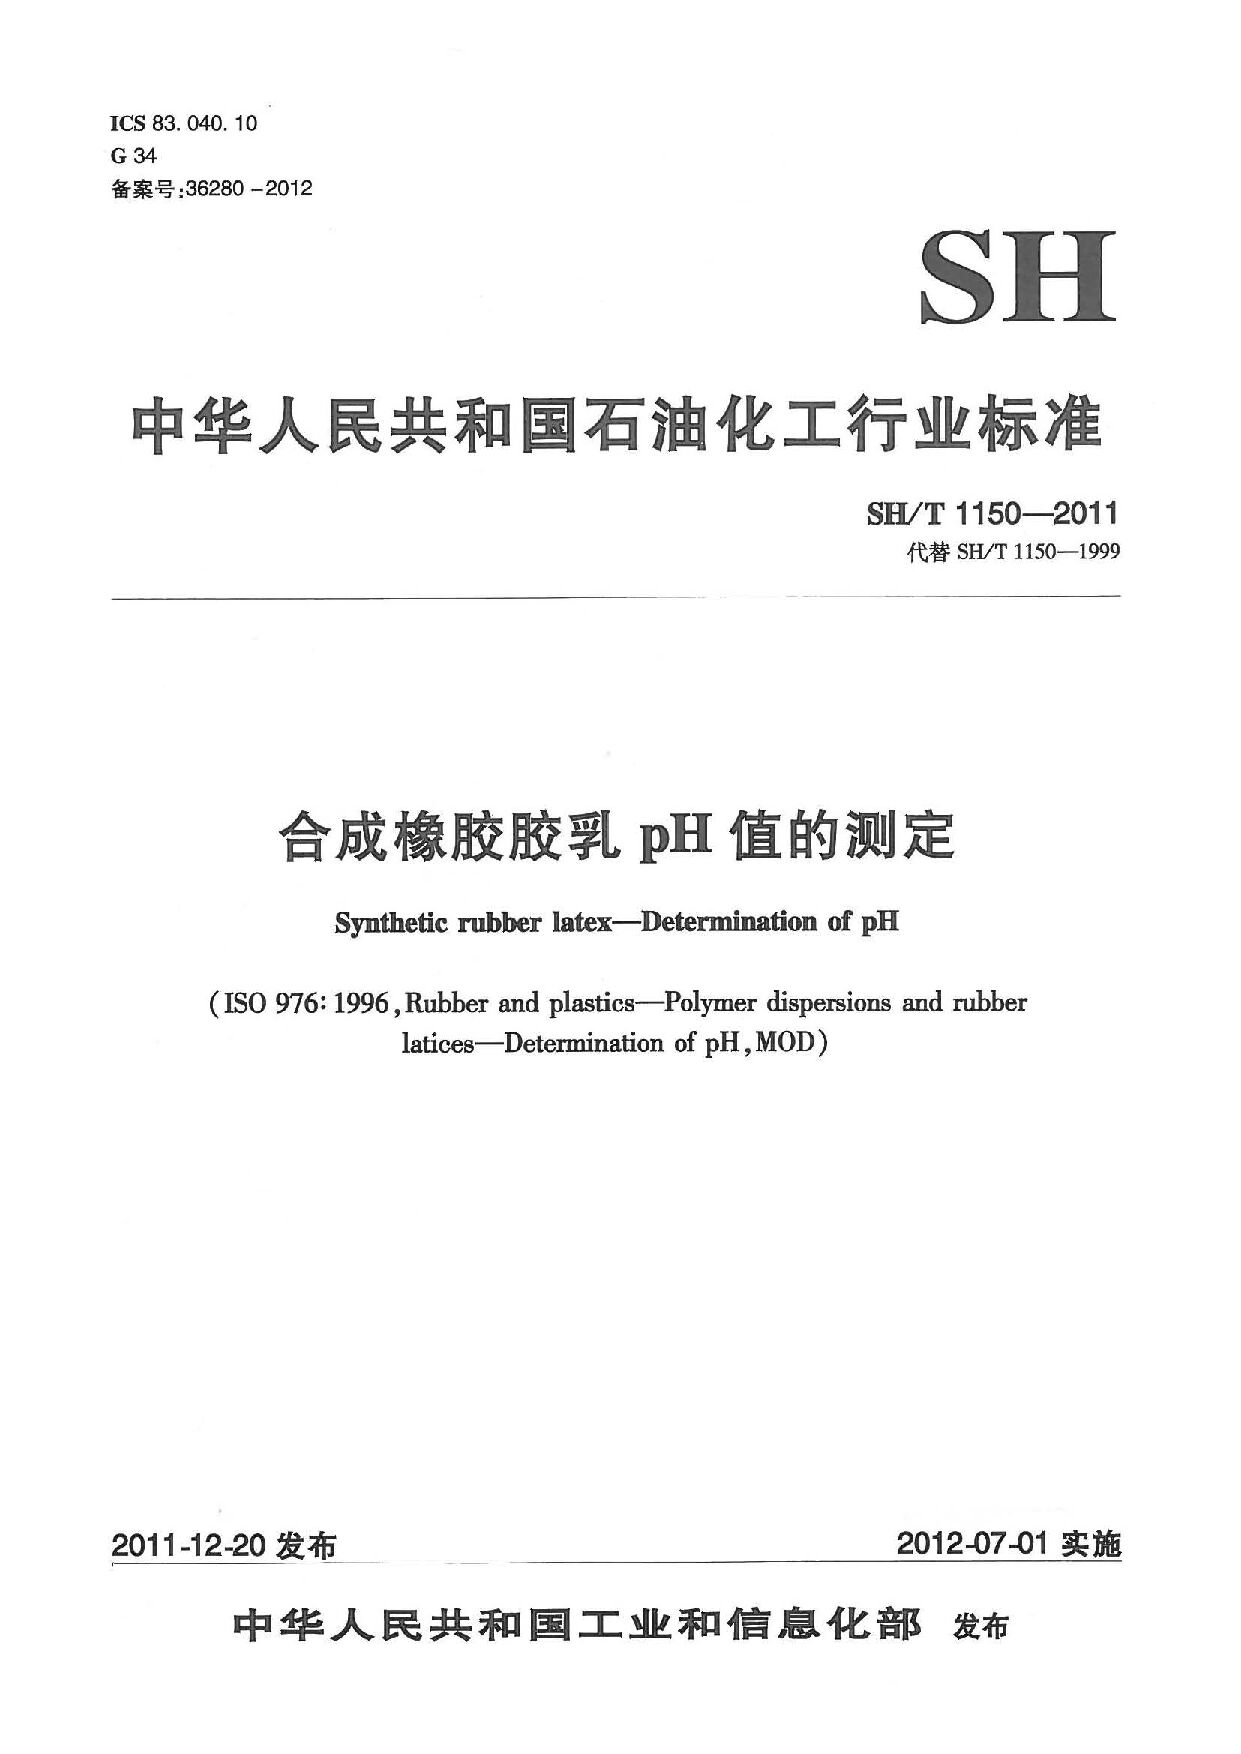 SH/T 1150-2011封面图